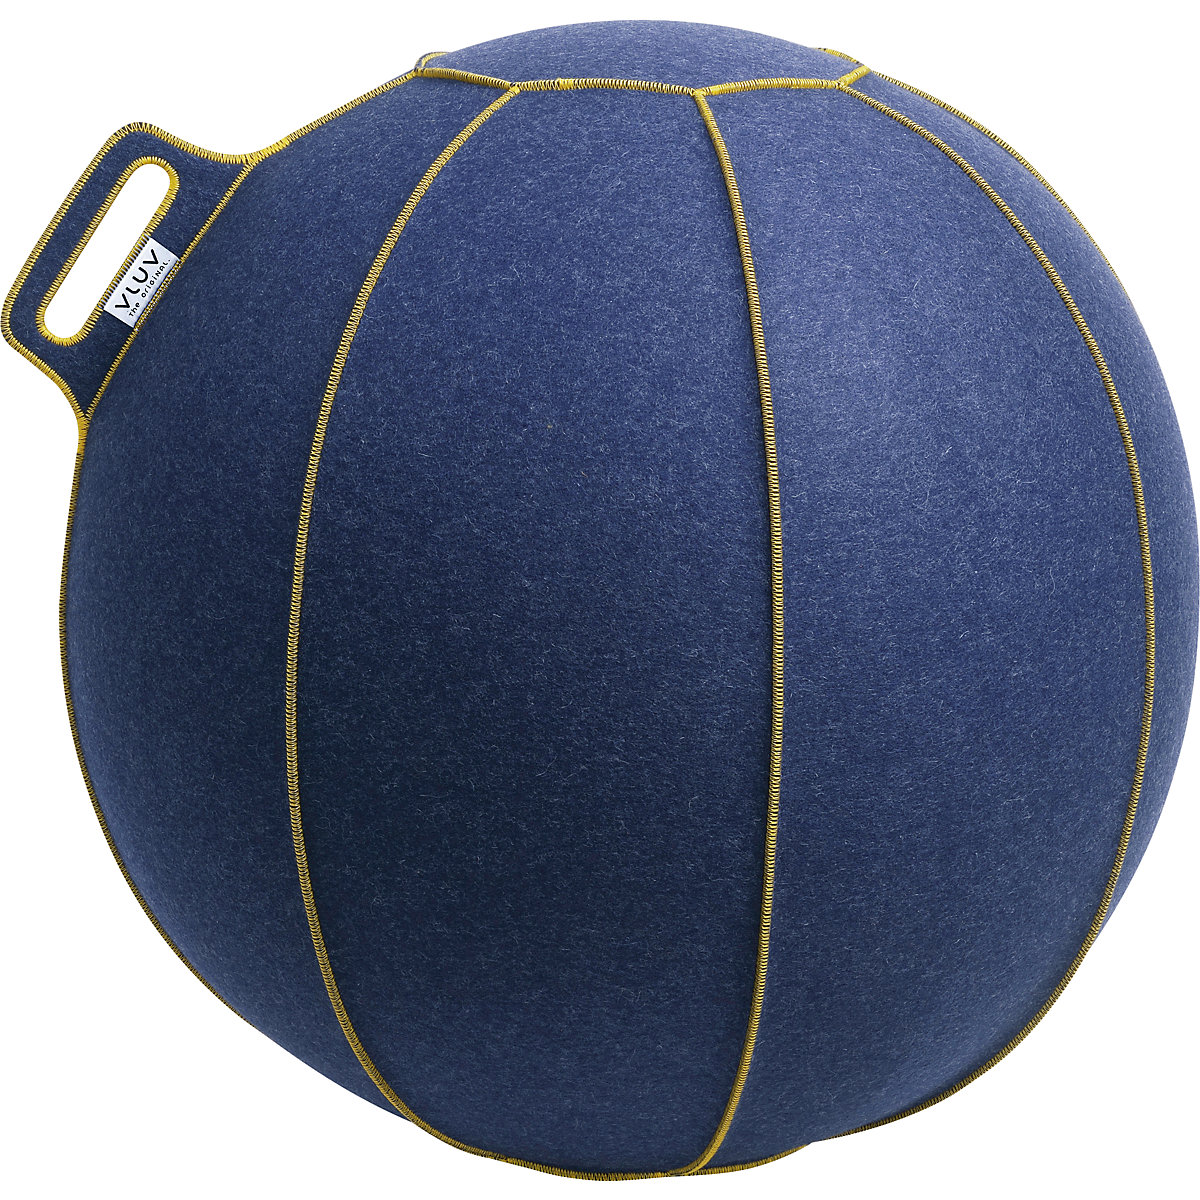 VELT Swiss ball – VLUV, made of merino wool felt, 700 – 750 mm, mottled jeans/gold